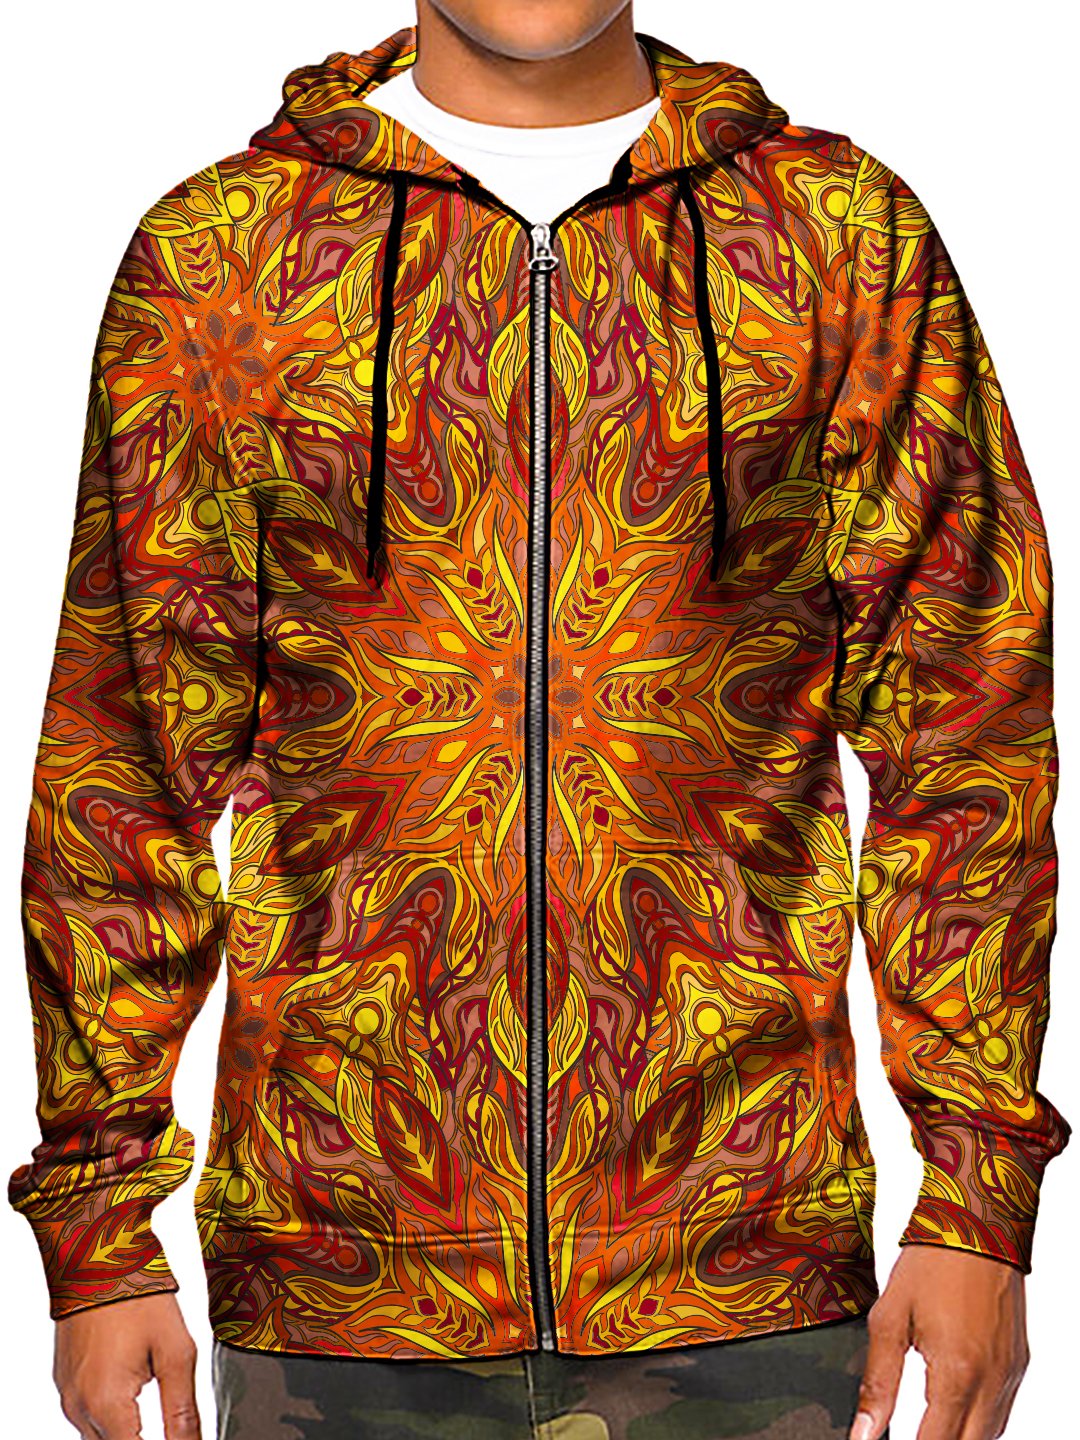 Model wearing GratefullyDyed Apparel psychedelic sacred geometry zip-up hoodie.